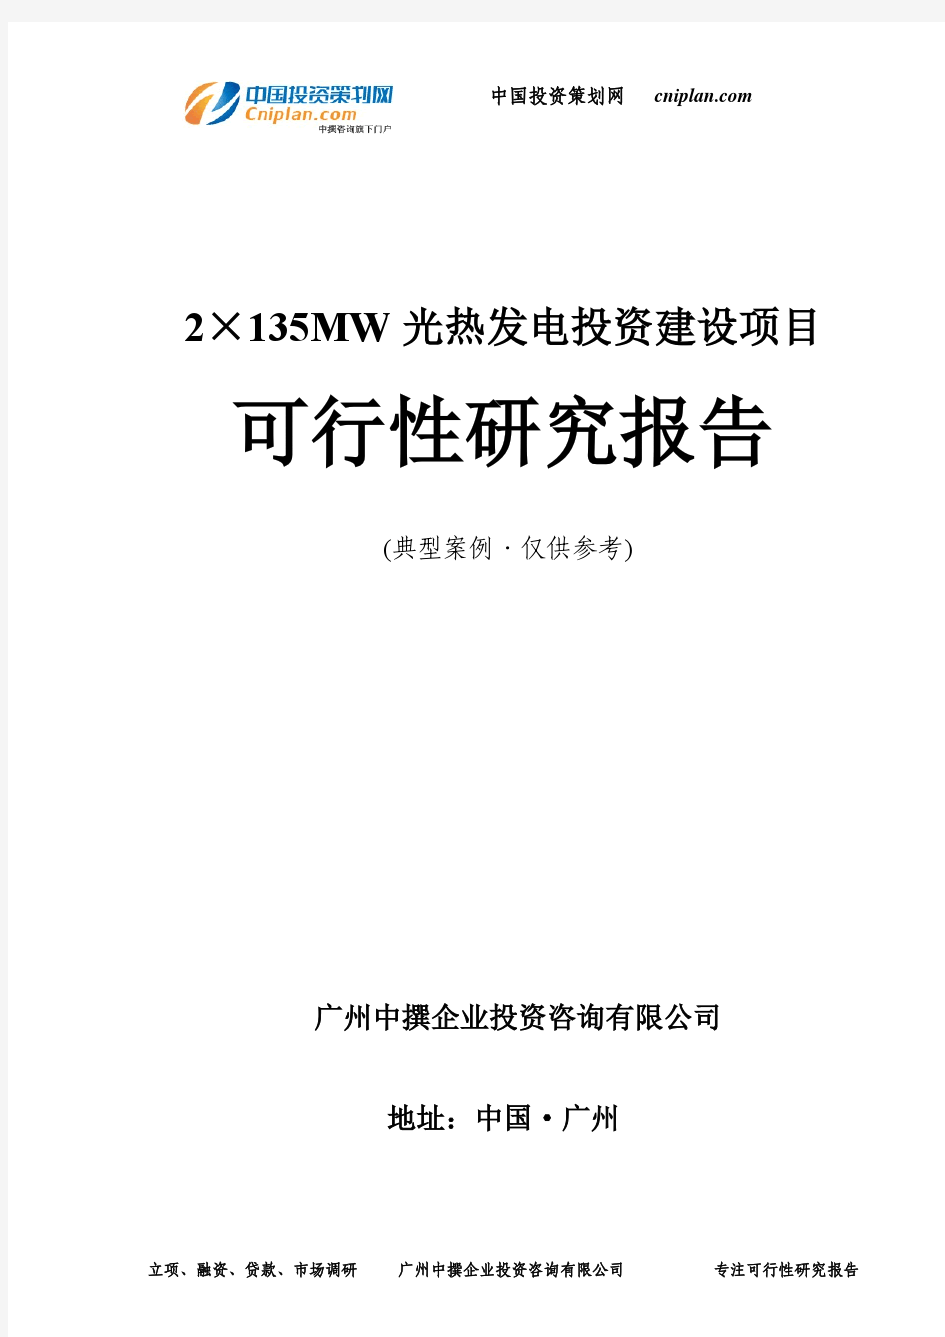 2×135MW光热发电投资建设项目可行性研究报告-广州中撰咨询